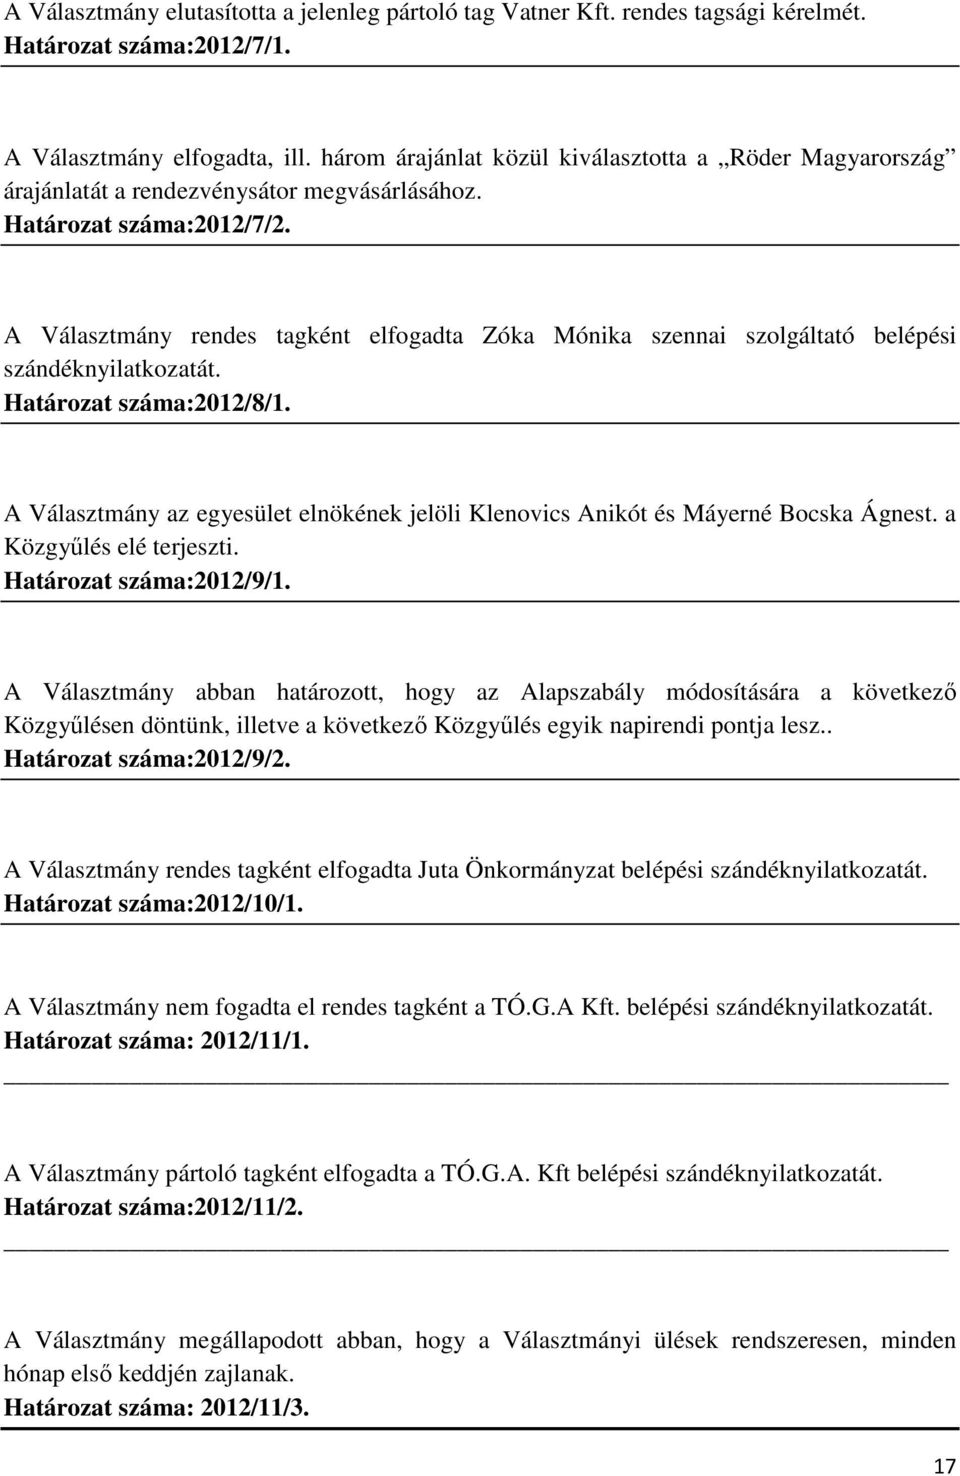 A Választmány rendes tagként elfogadta Zóka Mónika szennai szolgáltató belépési szándéknyilatkozatát. Határozat száma:2012/8/1.